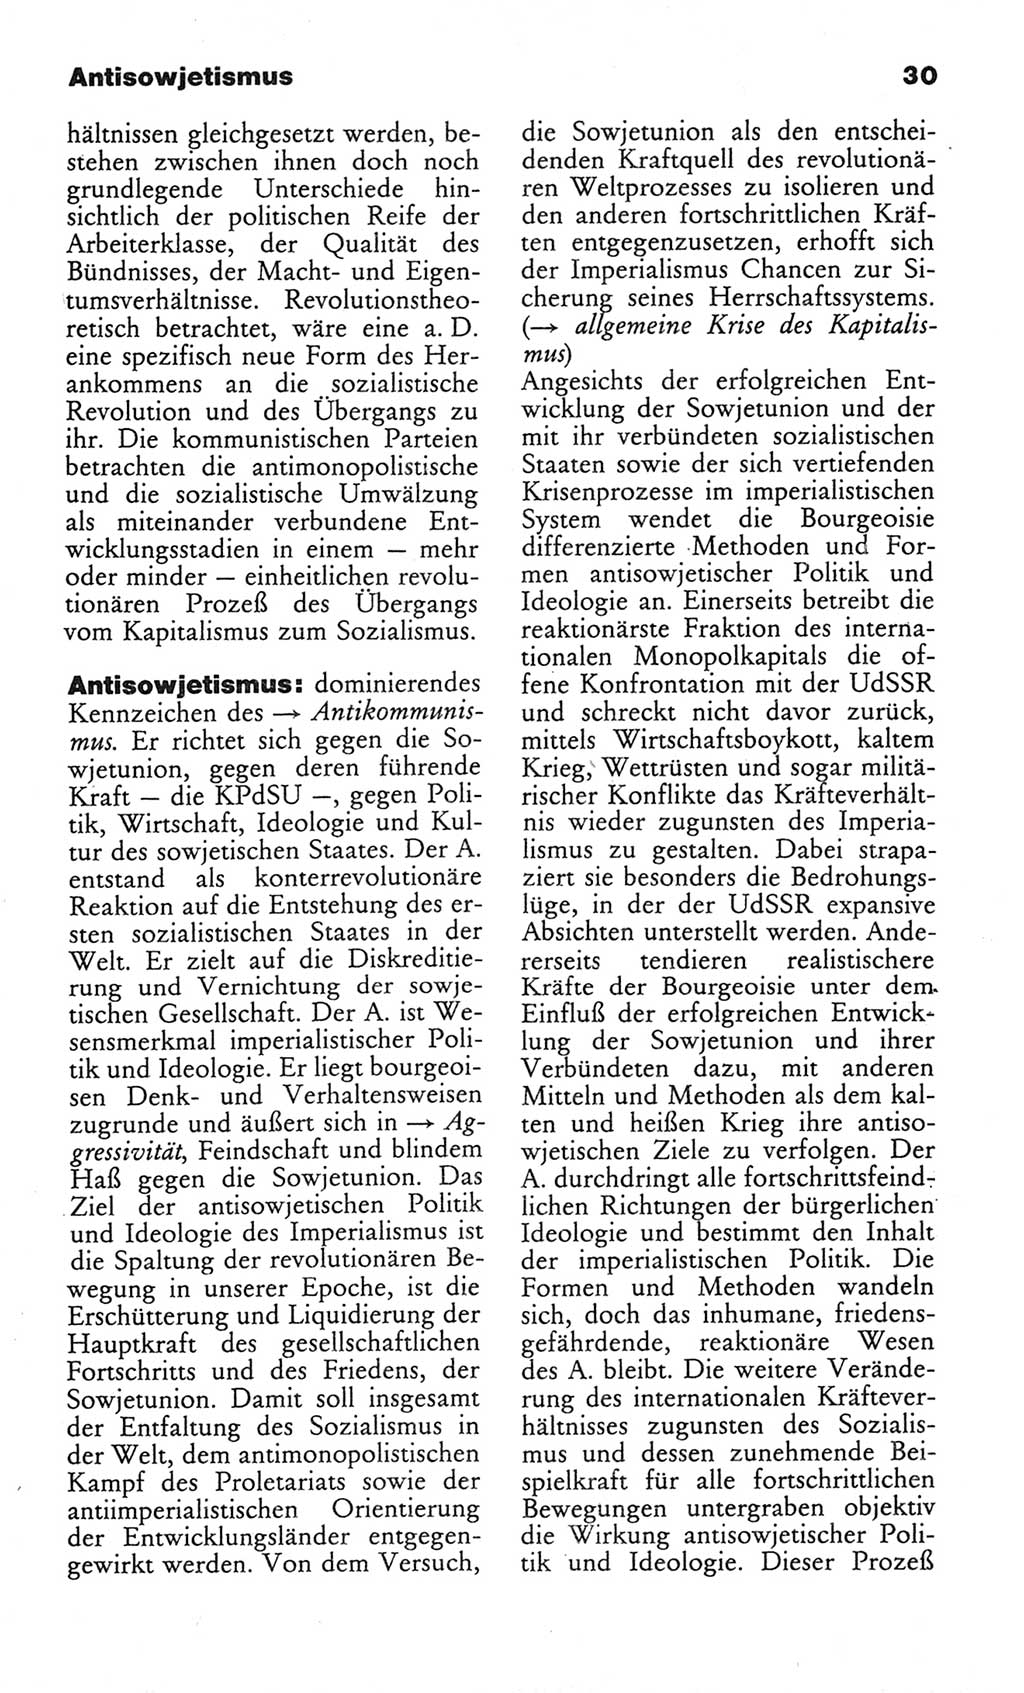 Wörterbuch des wissenschaftlichen Kommunismus [Deutsche Demokratische Republik (DDR)] 1982, Seite 30 (Wb. wiss. Komm. DDR 1982, S. 30)